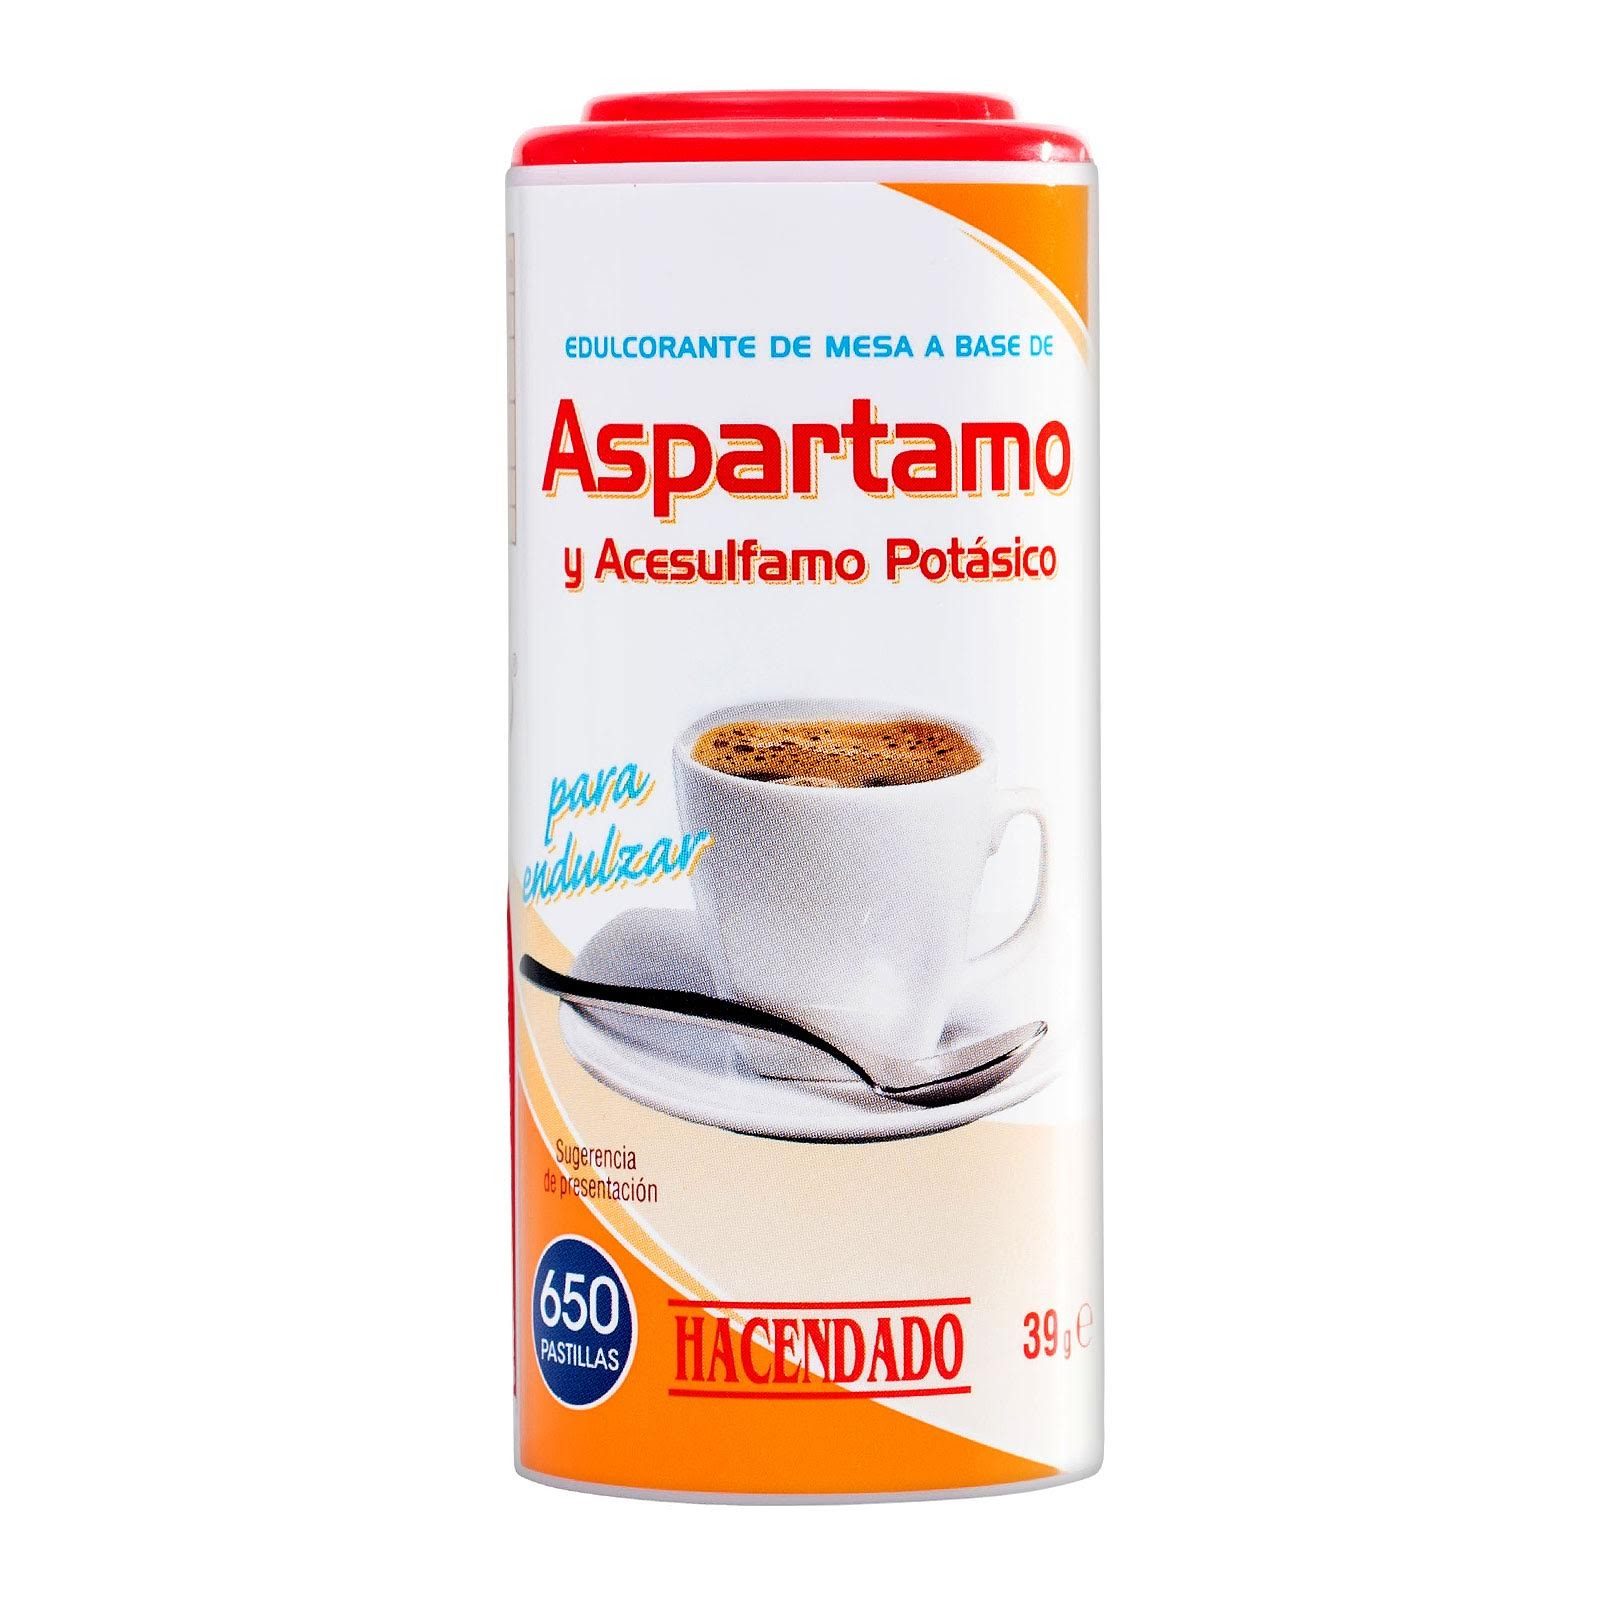 edulcorante-de-aspartamo-y-acesulfamo-potasico-en-pastillas-hacendado-mercadona-1-5940754